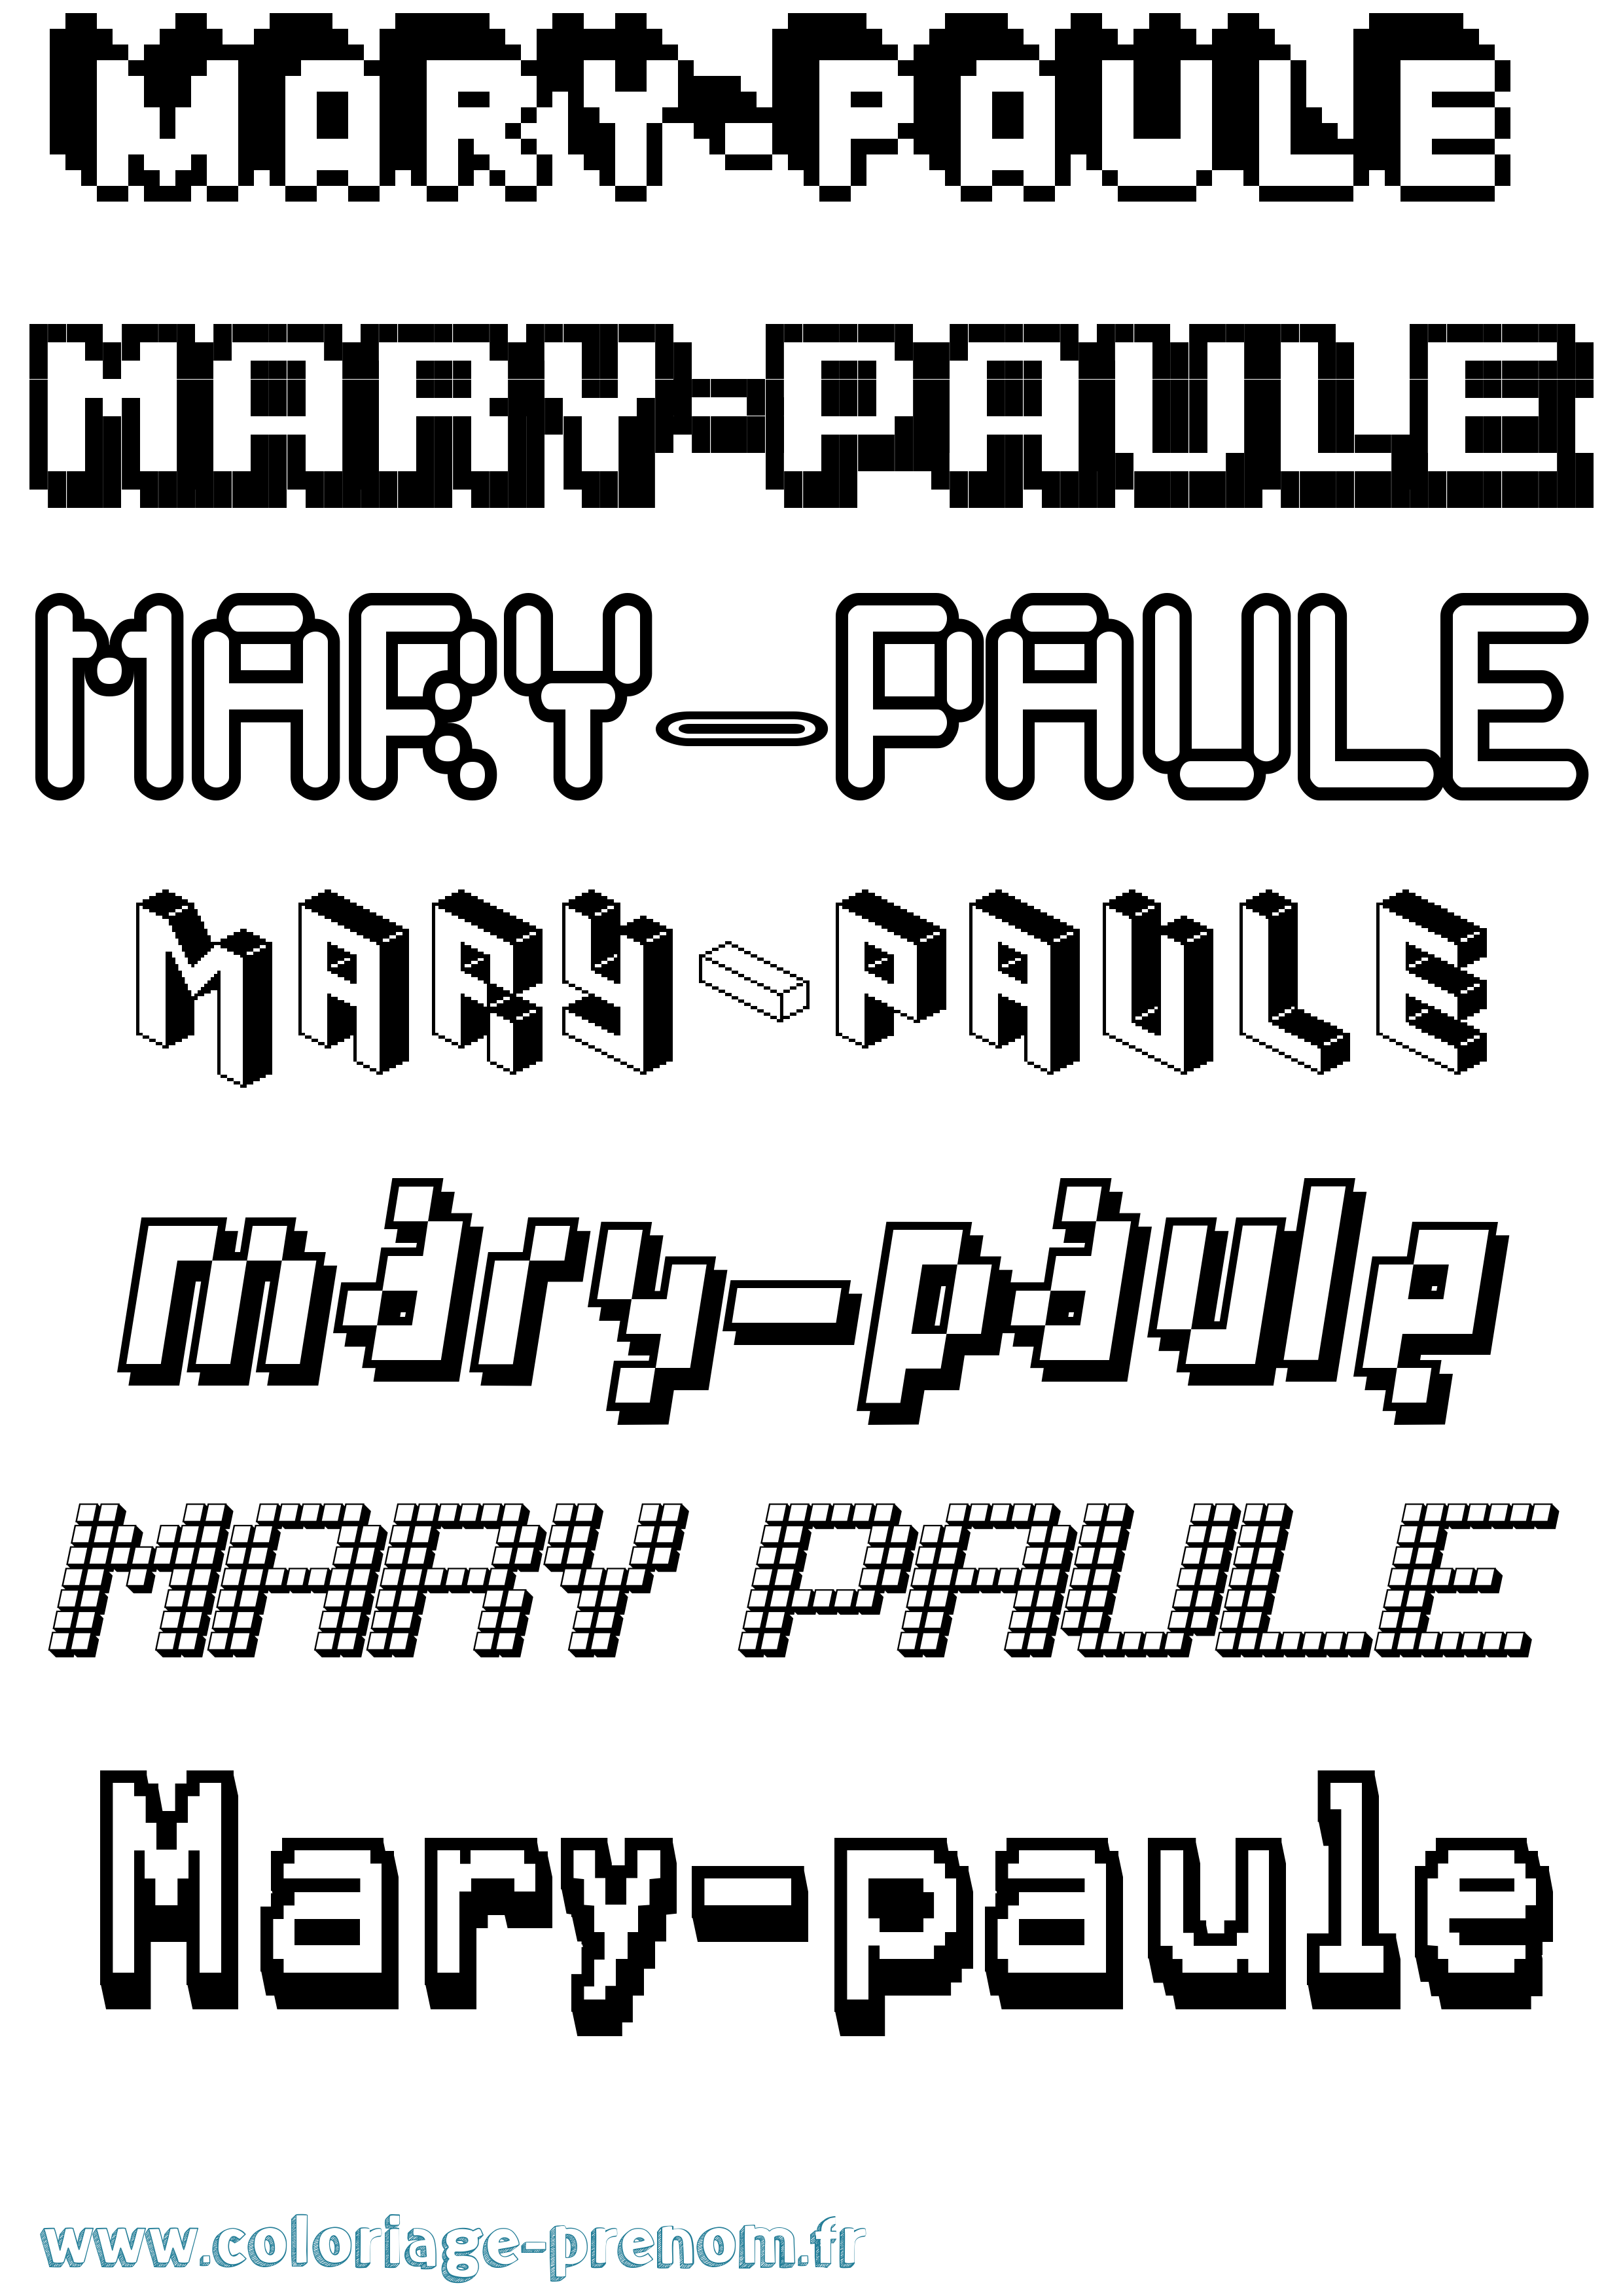 Coloriage prénom Mary-Paule Pixel